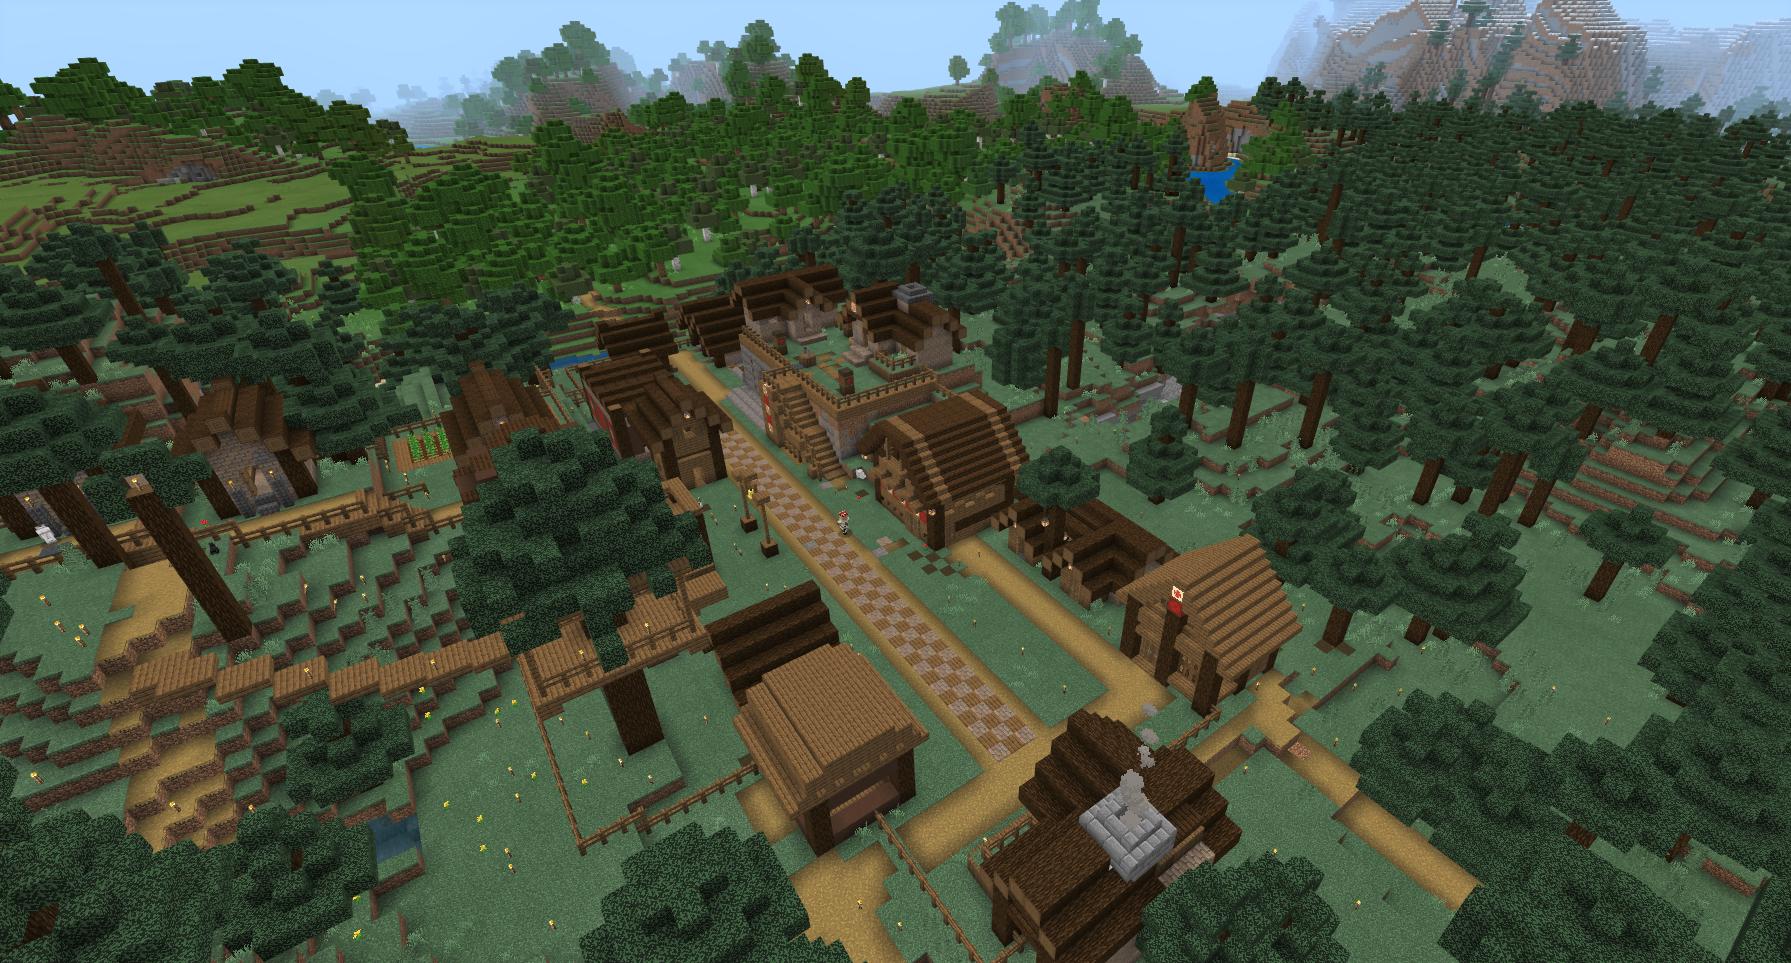 みあ マイクラ タイガの村リフォームはまだこれくらい W 2枚目がbefore 今回は村人さんが歩き回れる自然な感じの 村にしようかなぁって思ってます Minecraft Minecraft建築コミュ マイクラ T Co Q76vu8ruxk Twitter